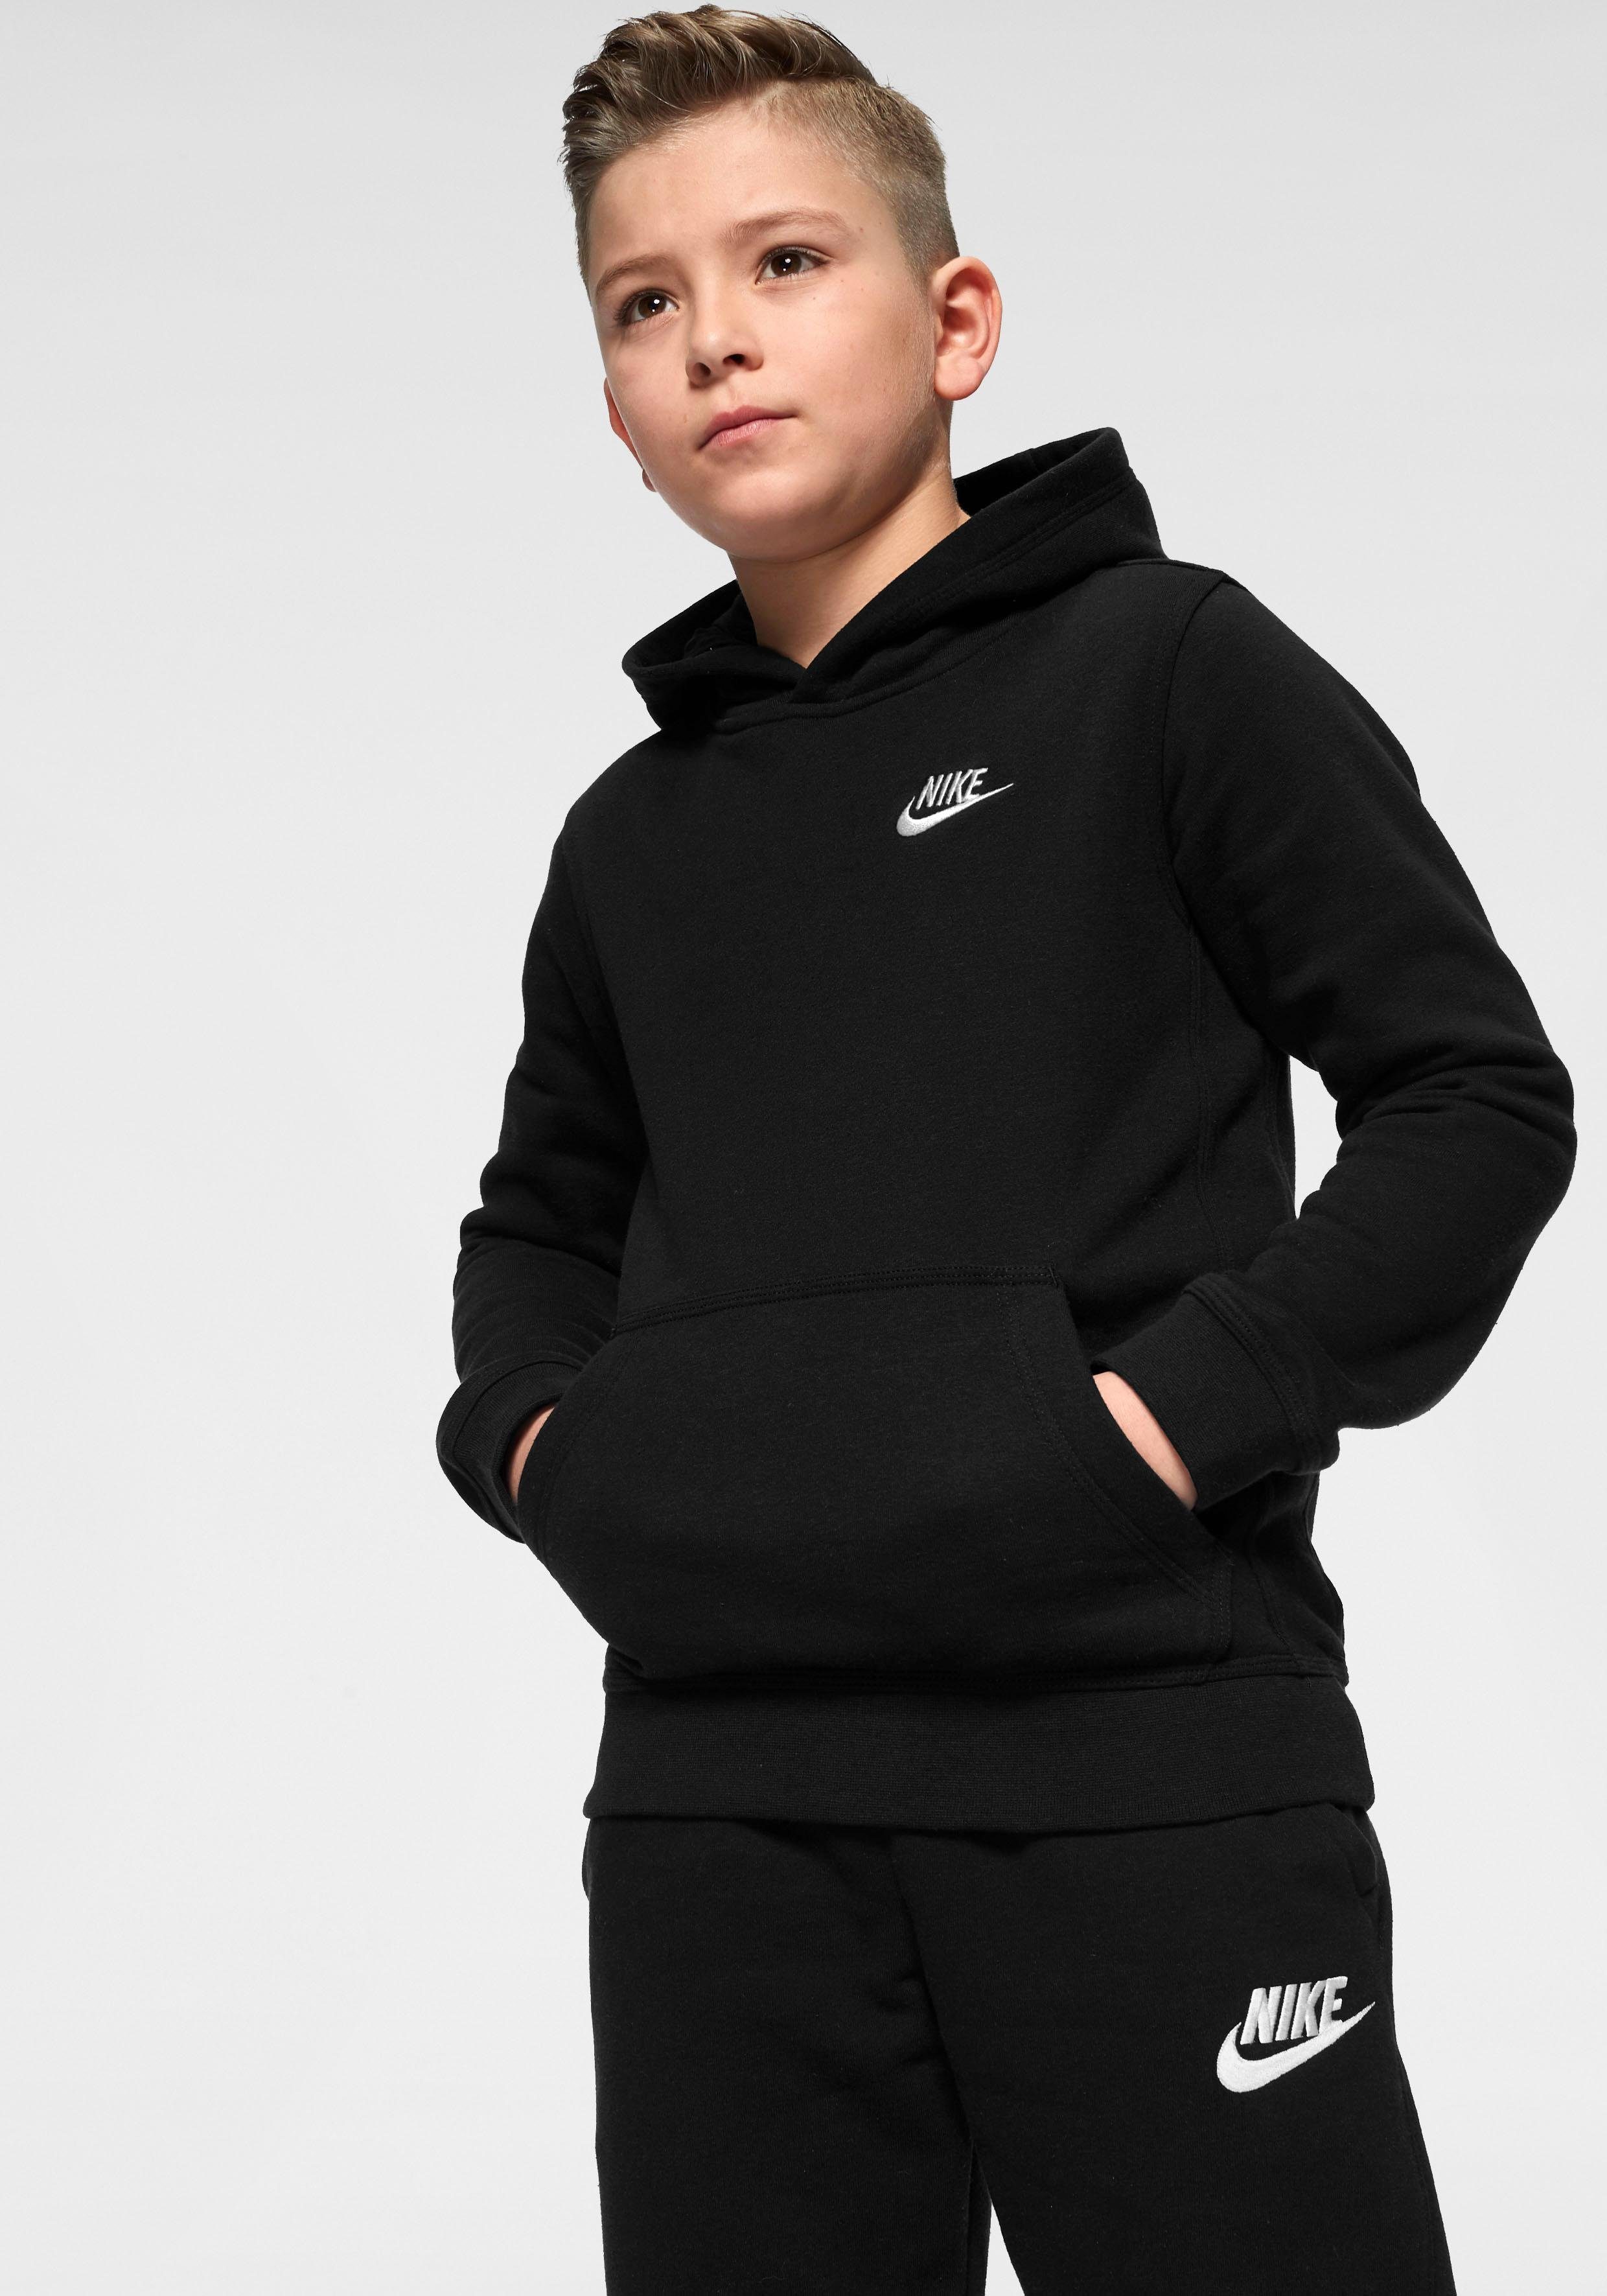 Nike Sweatshirt Jungen online kaufen | OTTO